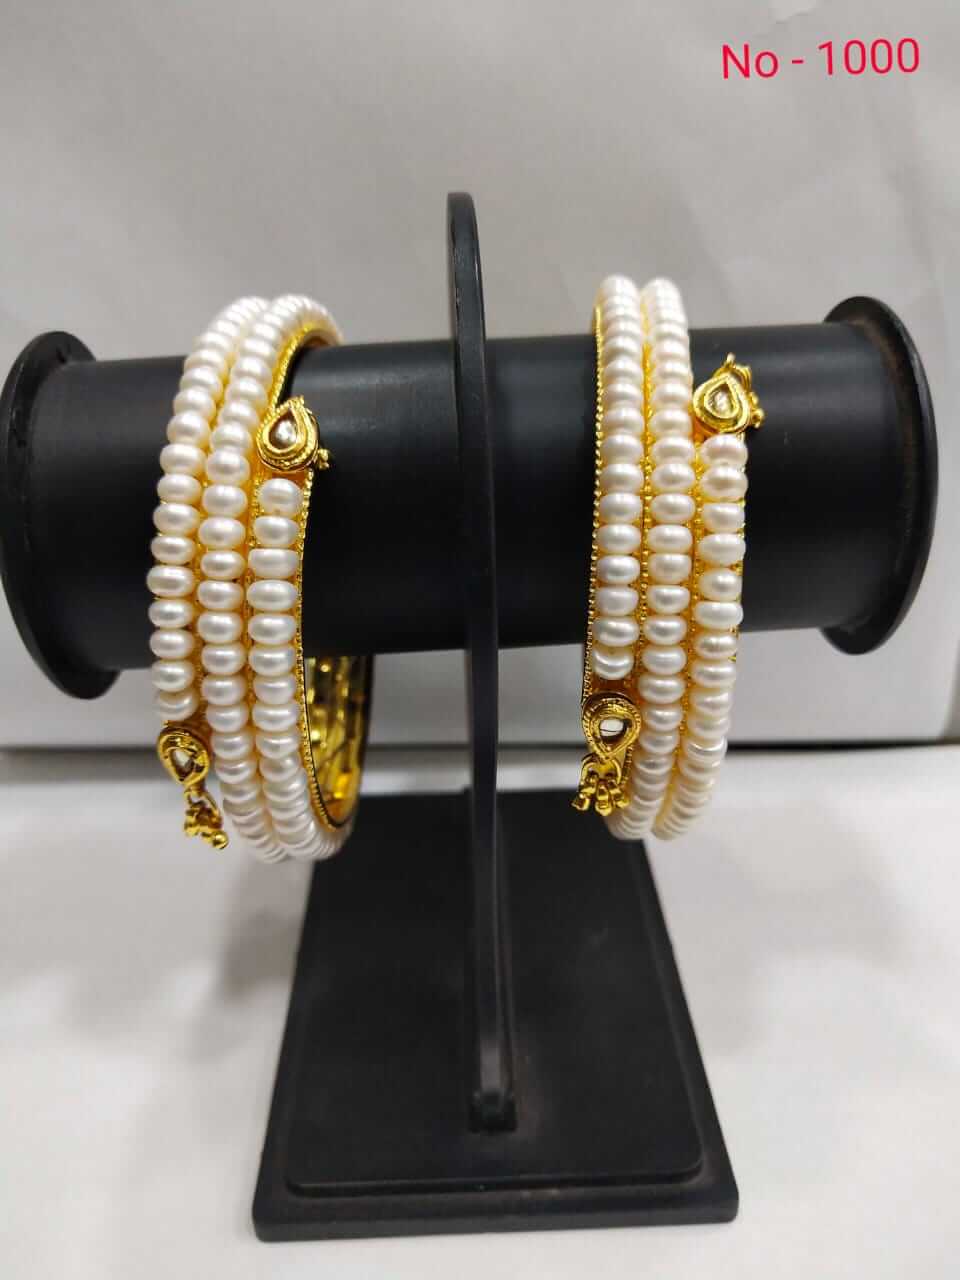 Sridevi pearl bangles adjustable